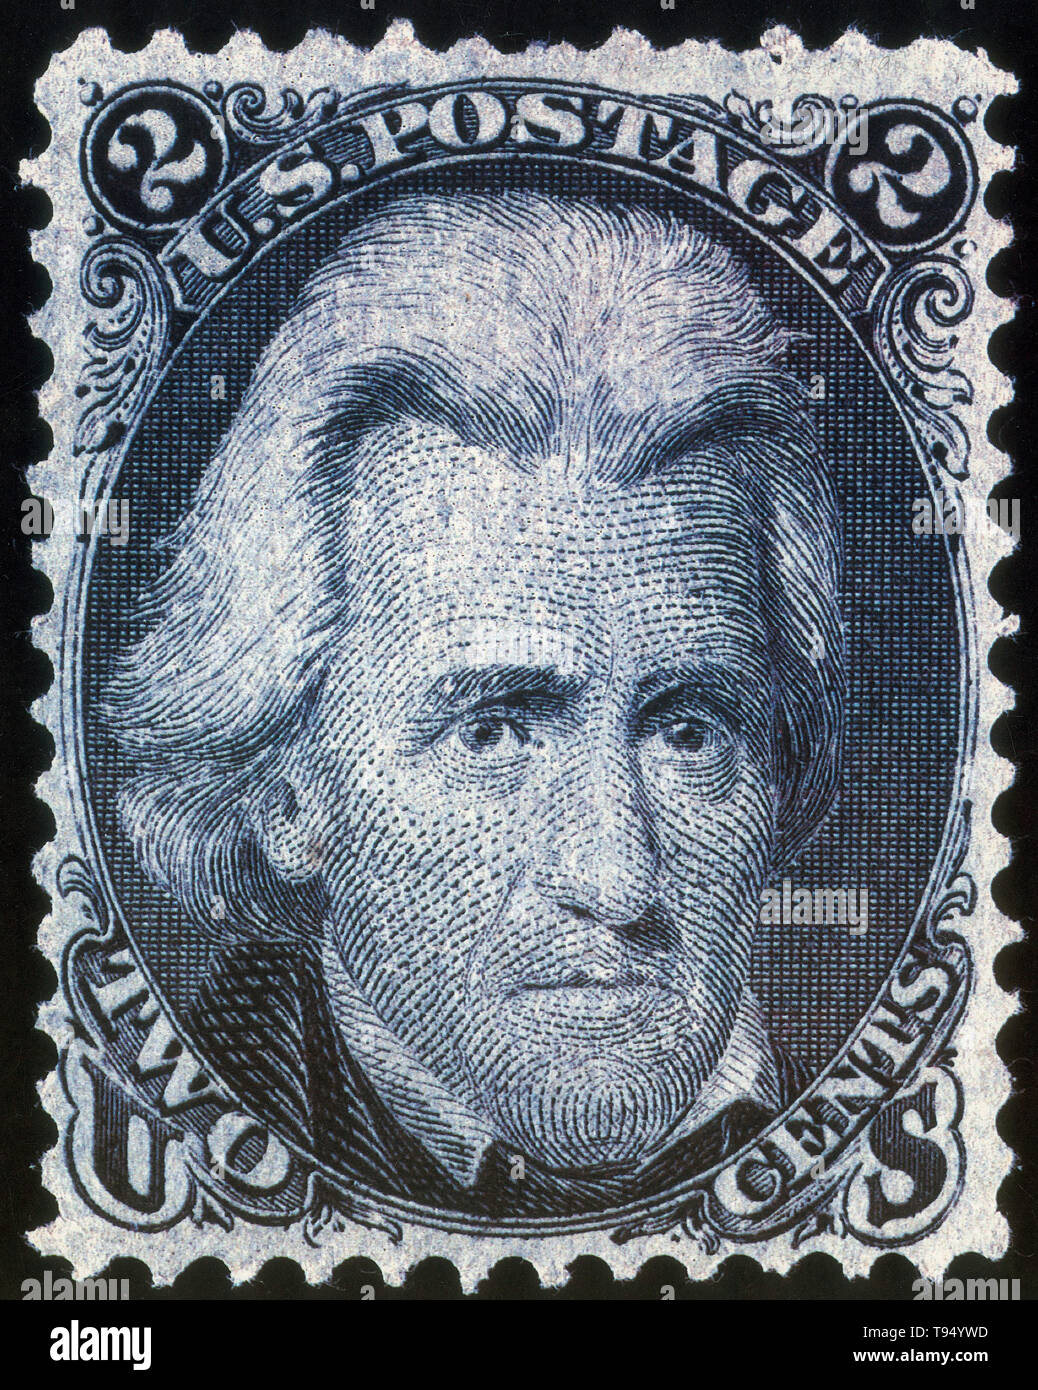 Blackjack Black Jack ou était le 2¢ dénomination United States Postage Stamp émis à partir du 1er juillet 1863 à 1869, est généralement appelé 'Black Jack' en raison du grand art du portrait du président des États-Unis, Andrew Jackson sur son visage imprimé en noir. Banque D'Images